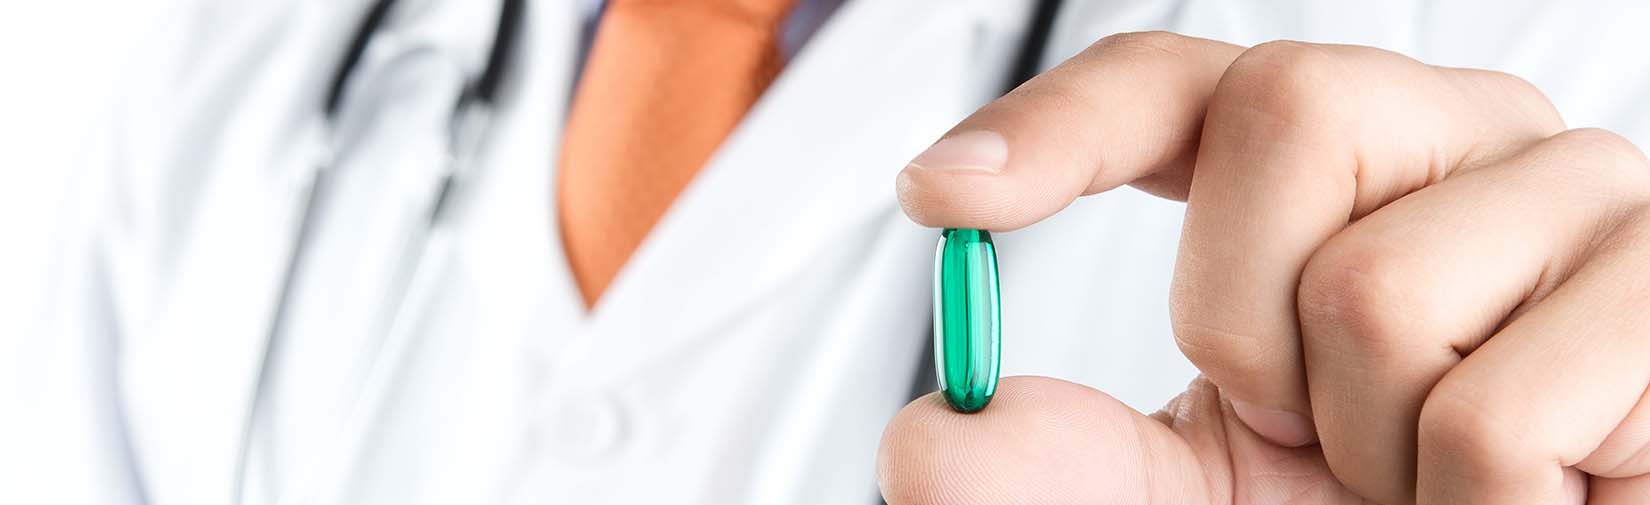 iCare Medicare Plans Part D Prescription Drugs